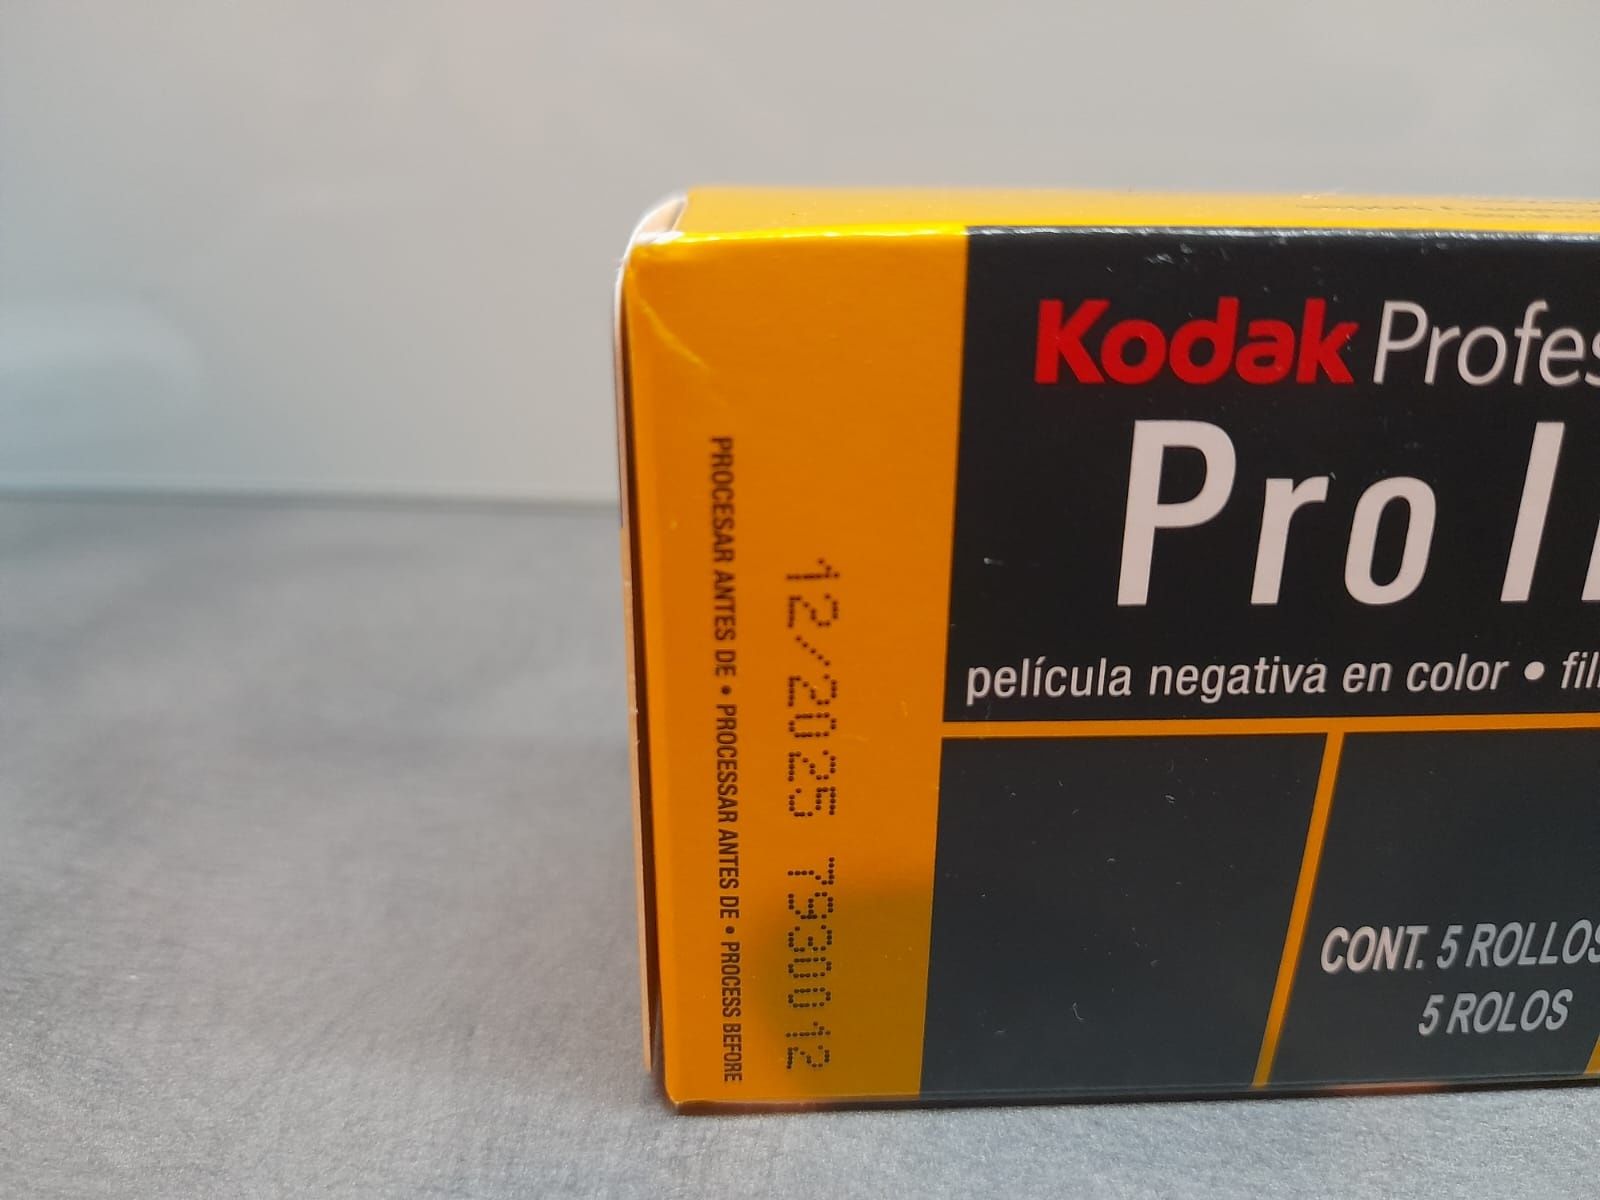 Kodak Professional Pro Image 100